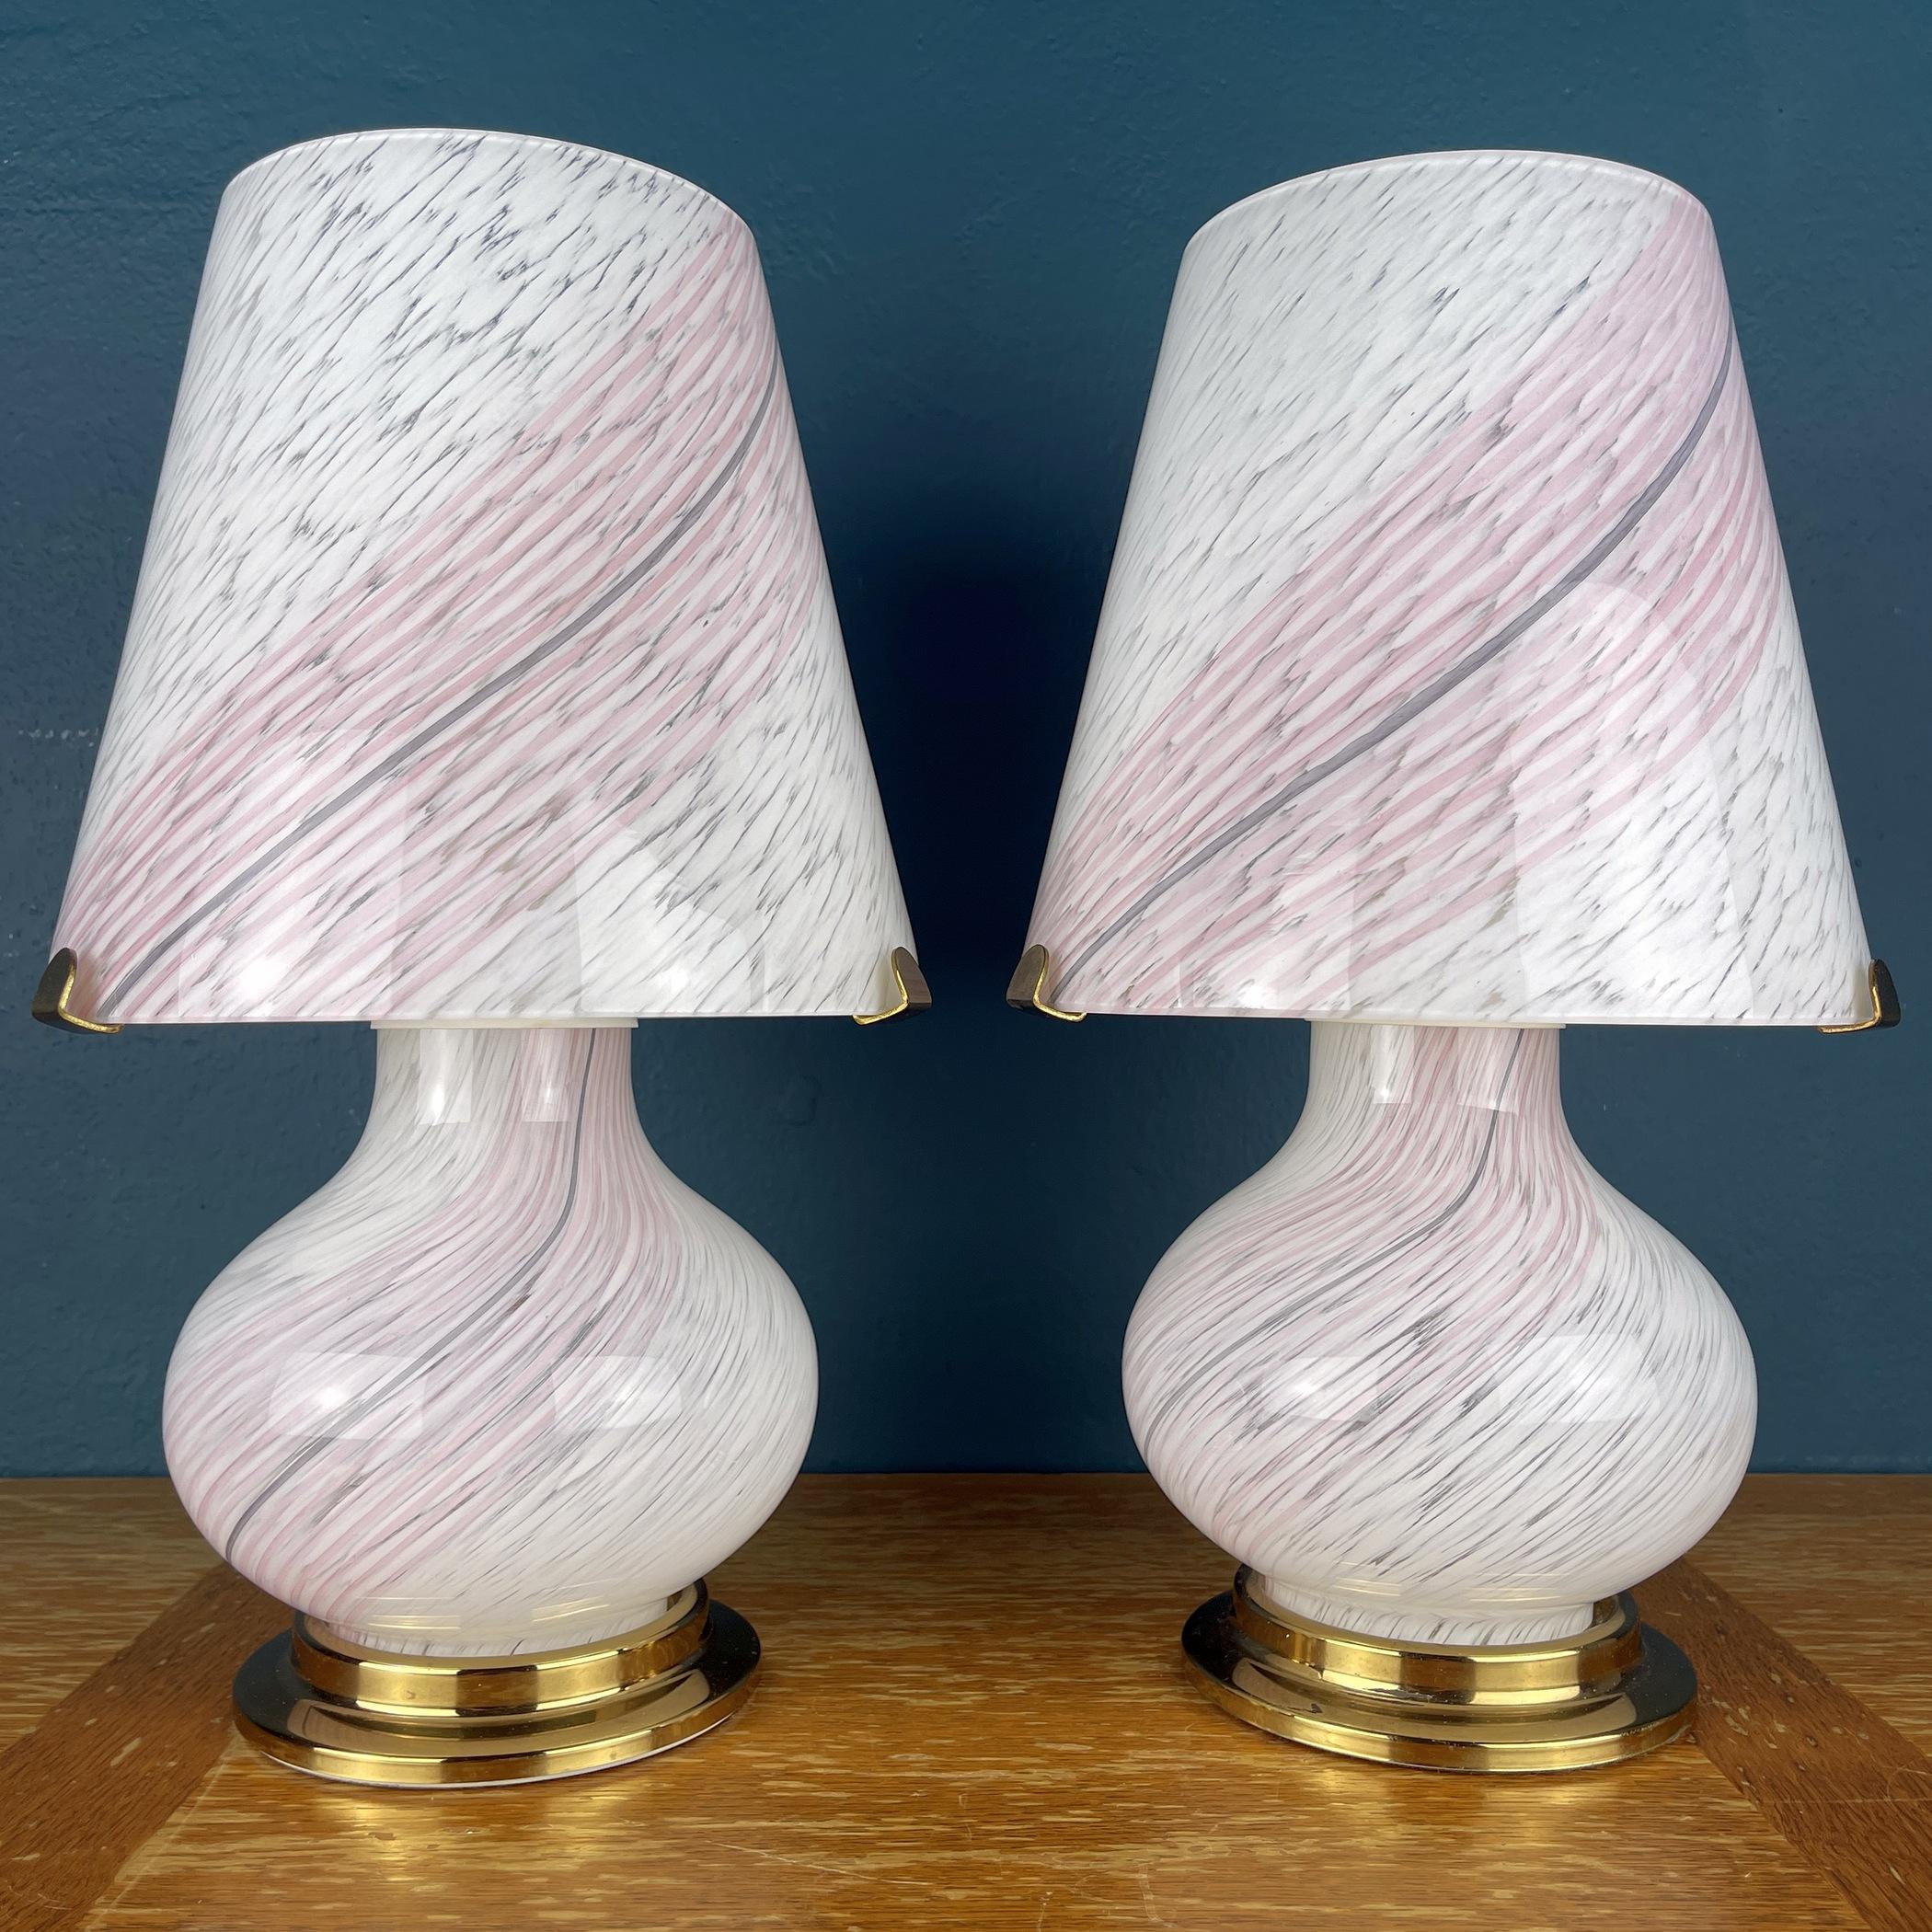 Das Paar schöner Pilzlampen aus Murano wurde in den 1970er Jahren in Italien hergestellt. Die Schönheit des klassisch gewirbelten Glases macht diese Lampen zu einem wahren Augenschmaus. Der elegant geformte Sockel trägt einen stabilen Metallbügel,